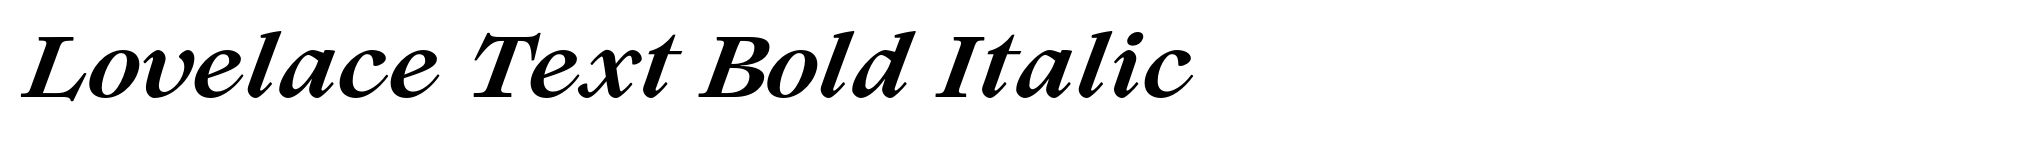 Lovelace Text Bold Italic image